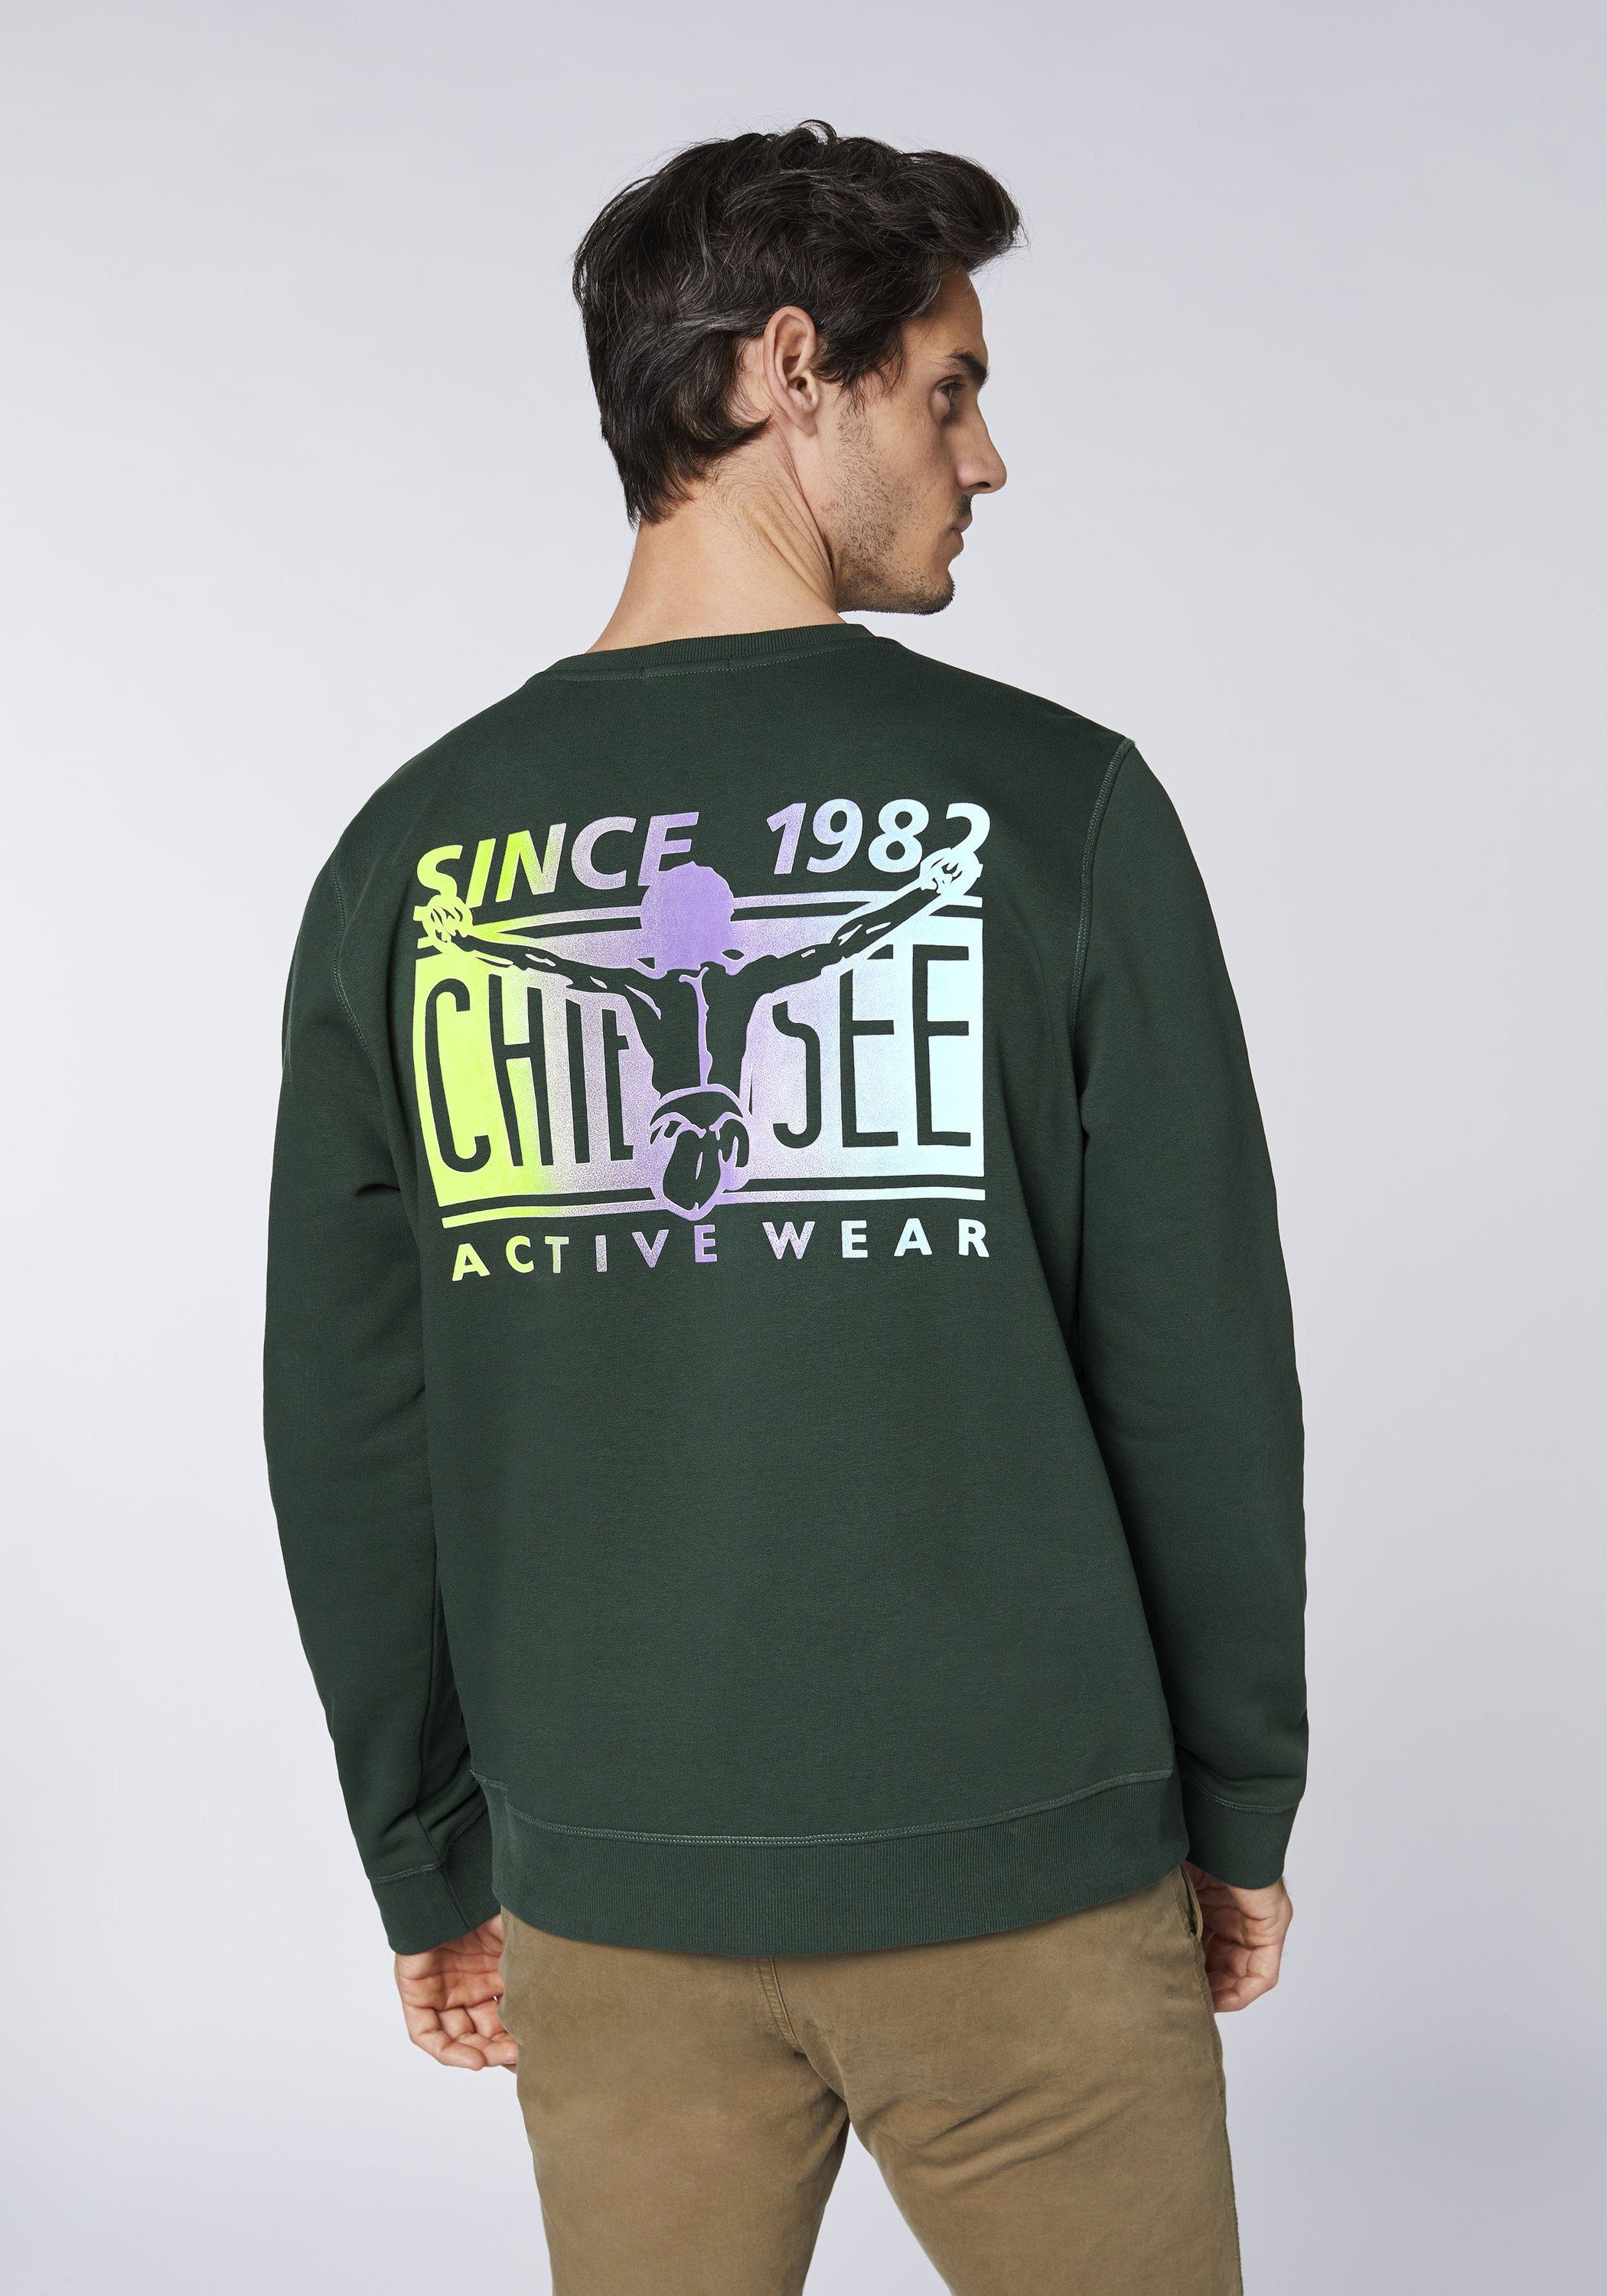 Sweatshirt Chiemsee im Sweatshirt mit 1 grün Farbverlauf dunkel Jumper-Motiv